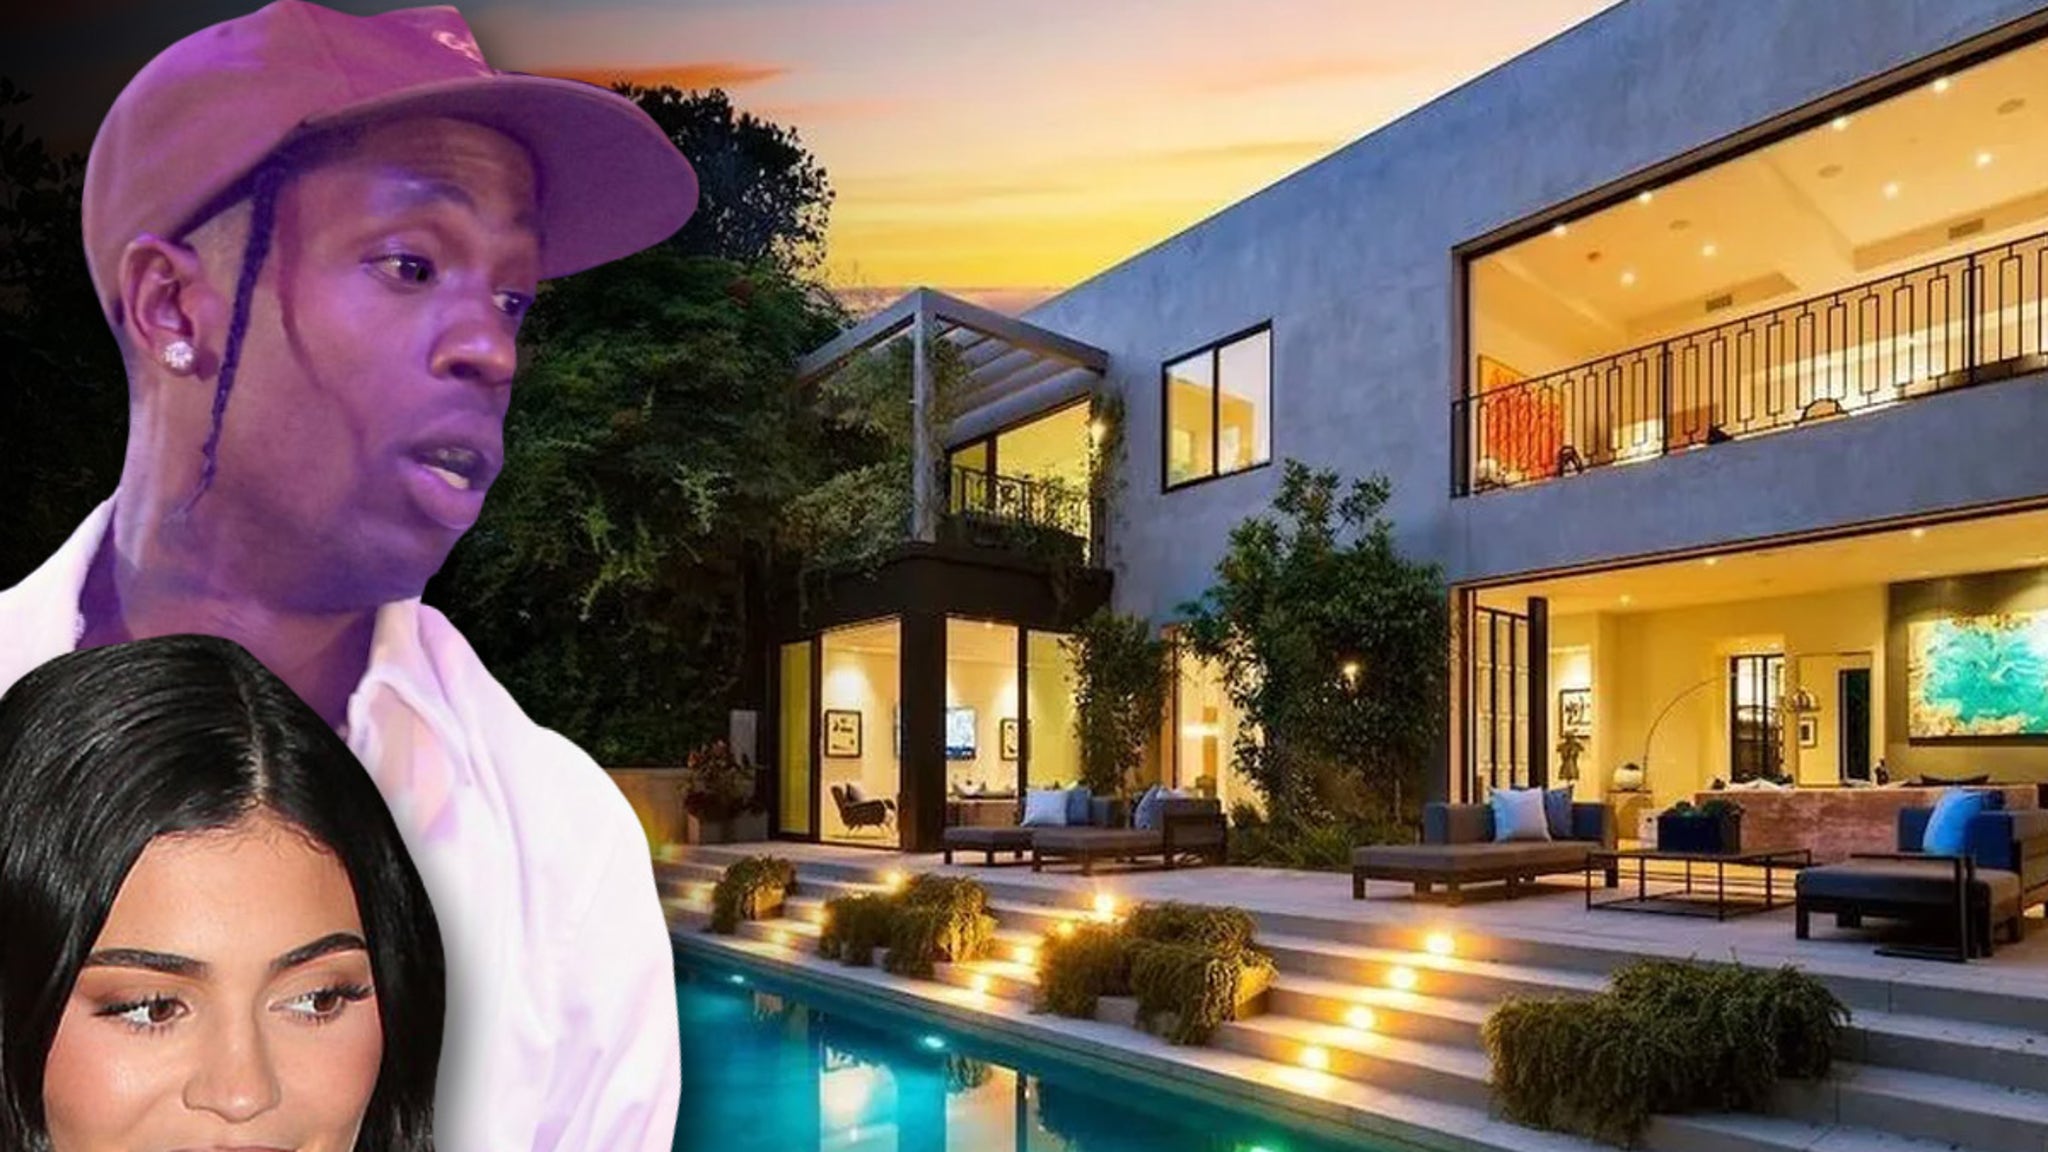 Kylie Jenner & Travis Scott Selling Beverly Hills Mansion For $22M #TravisScott